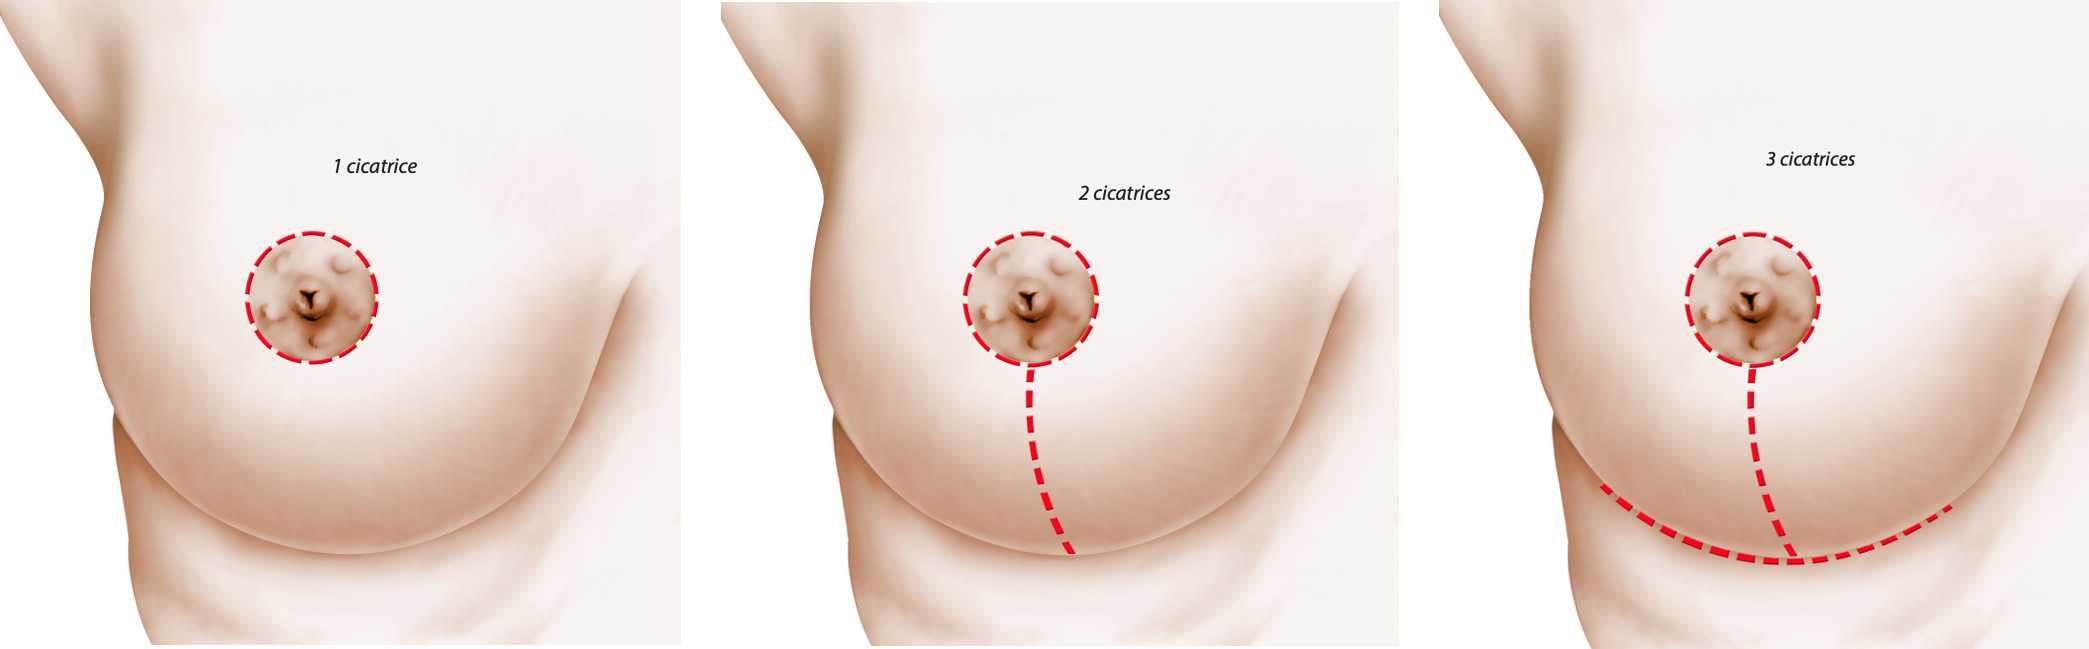 беременность и уменьшение груди фото 79